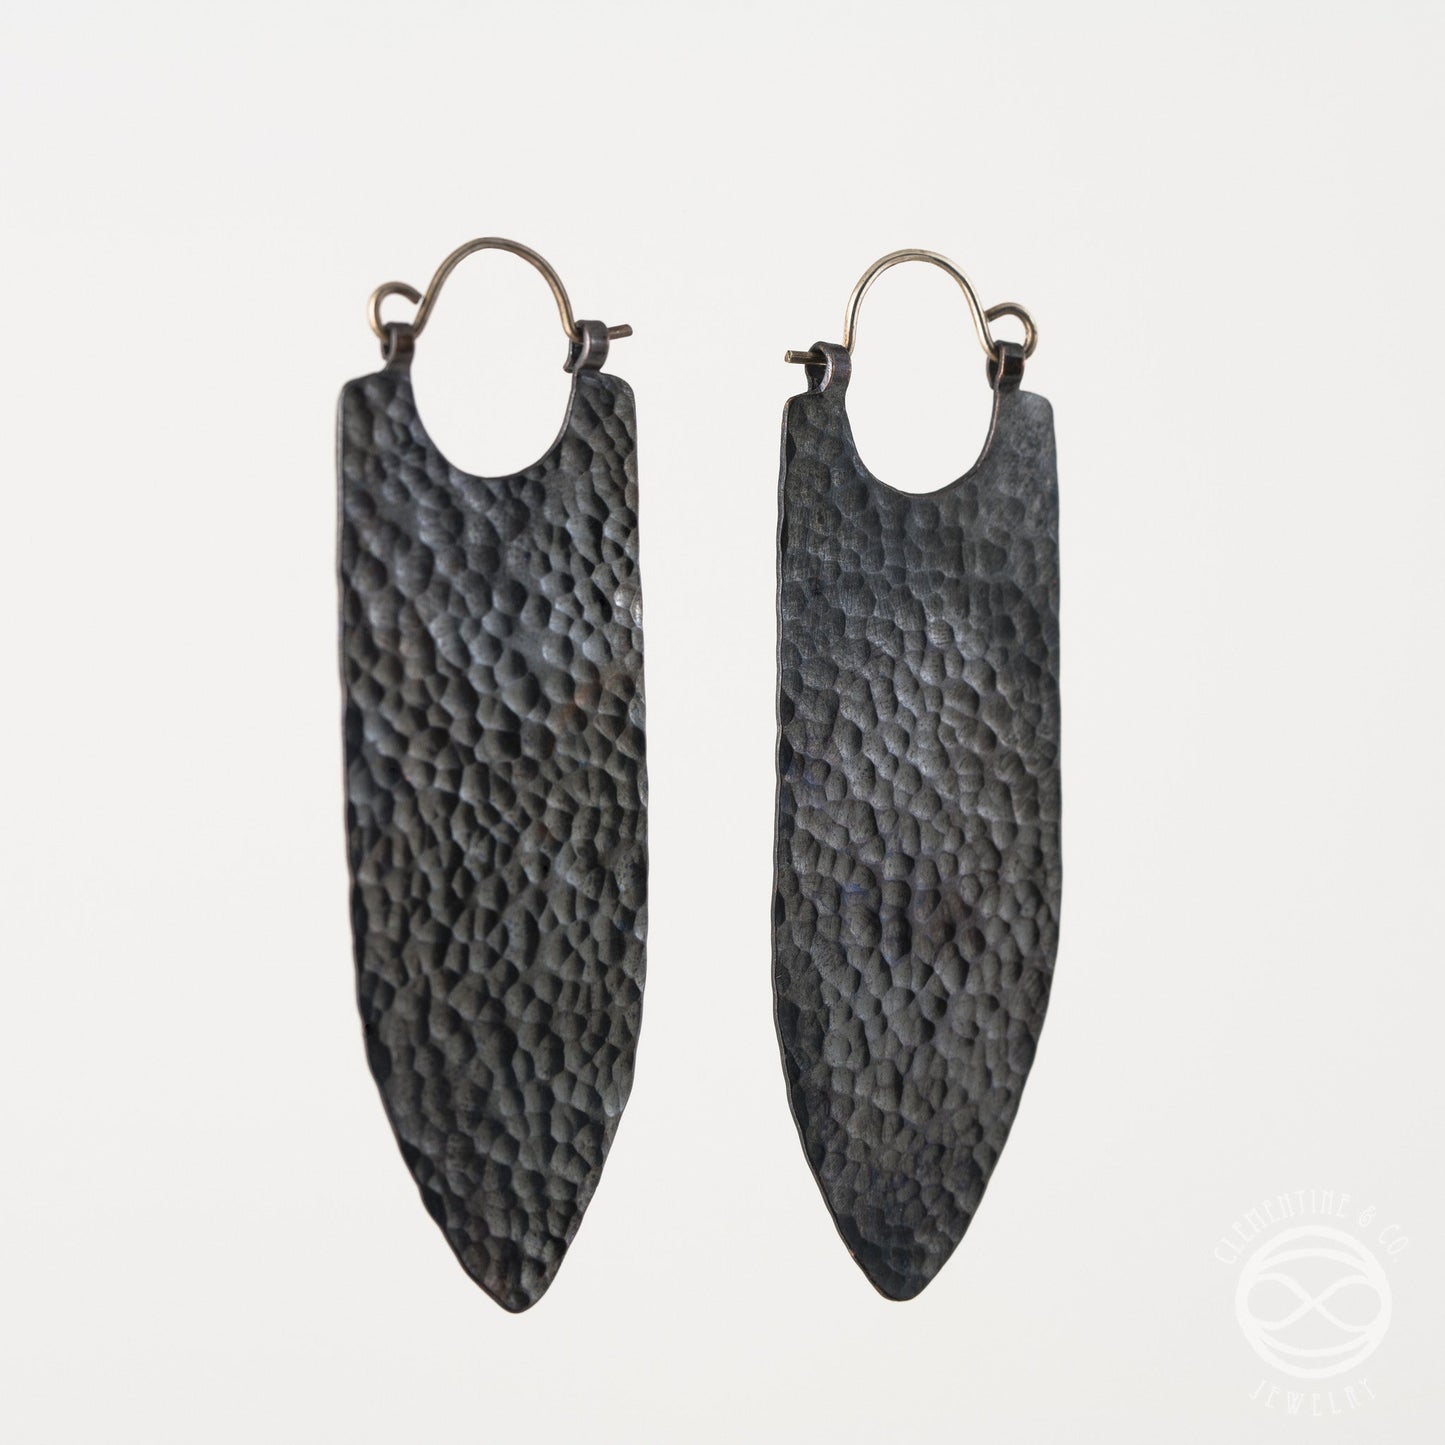 Banner Earrings in Blackened Copper